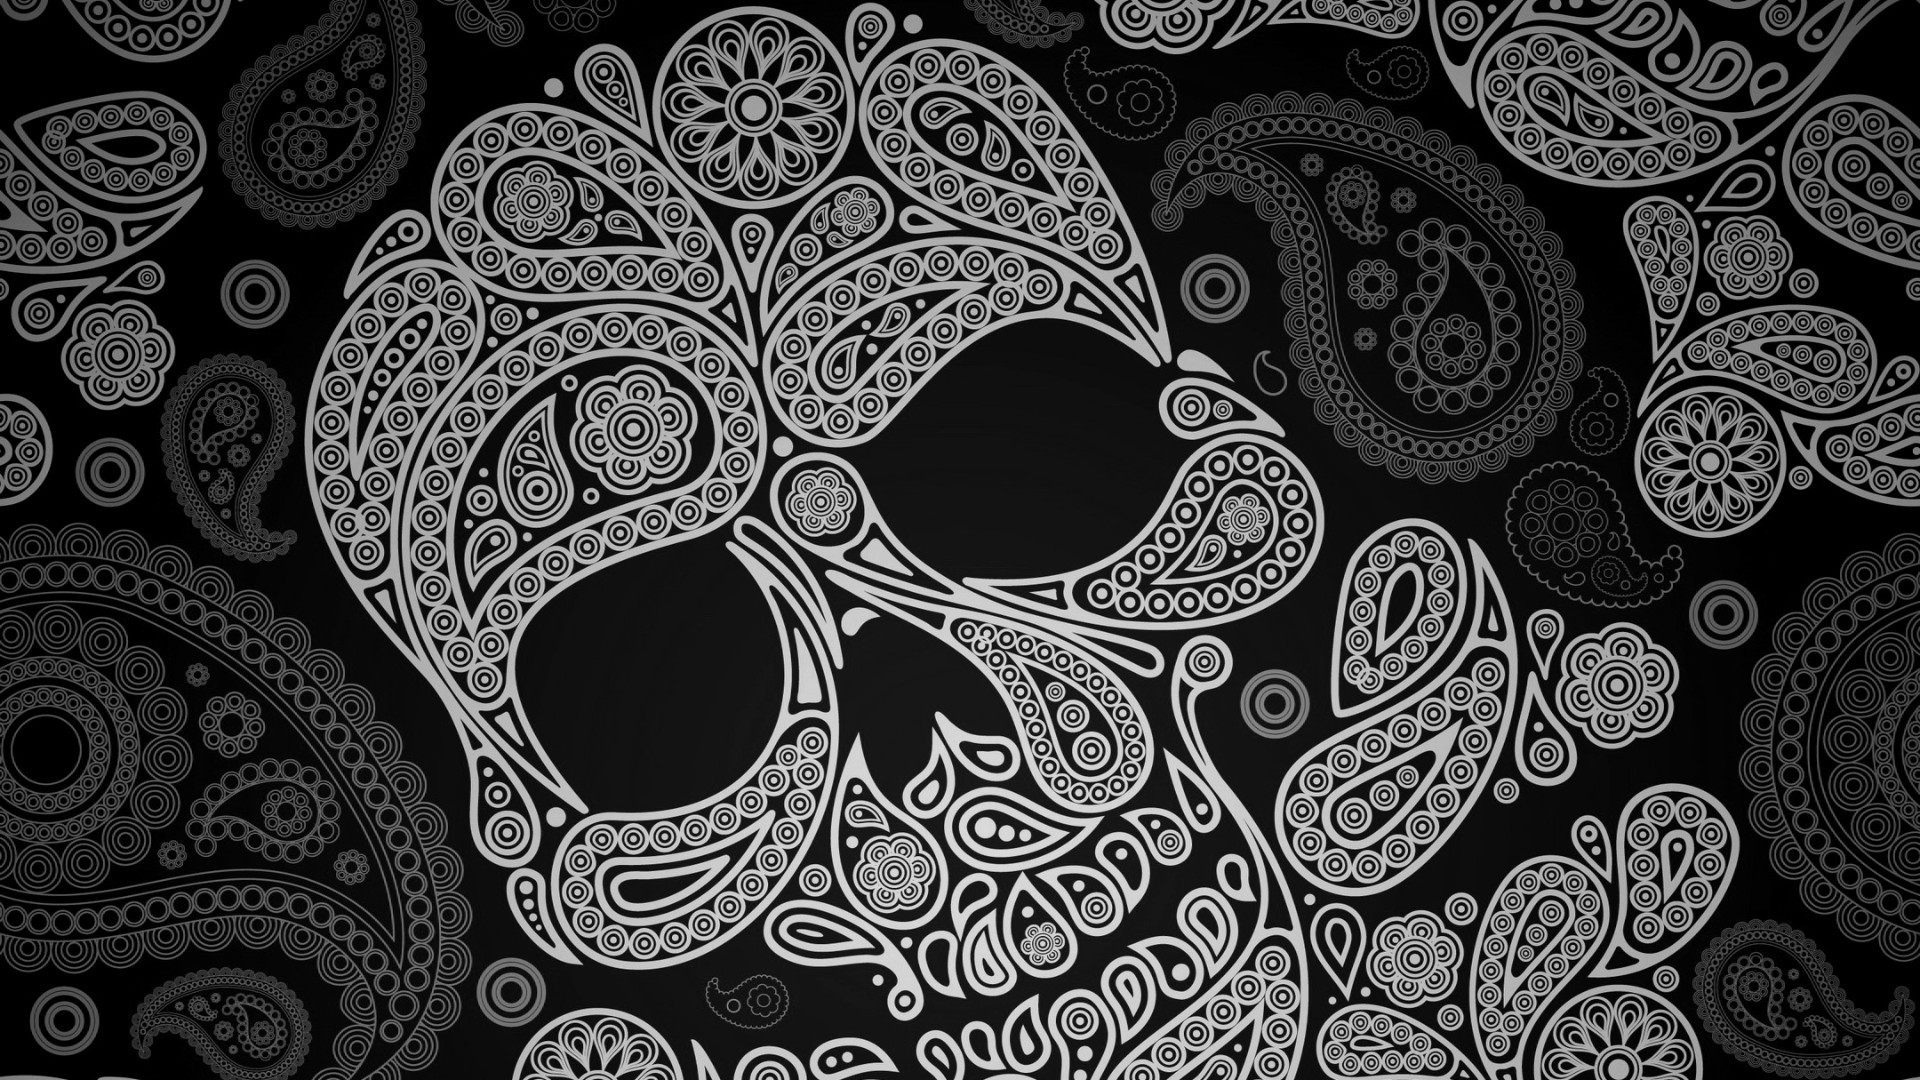 1920x1080  Sugar Skull Wallpapers - WallpaperSafari. 16 Â· Download Â· Res:   ...